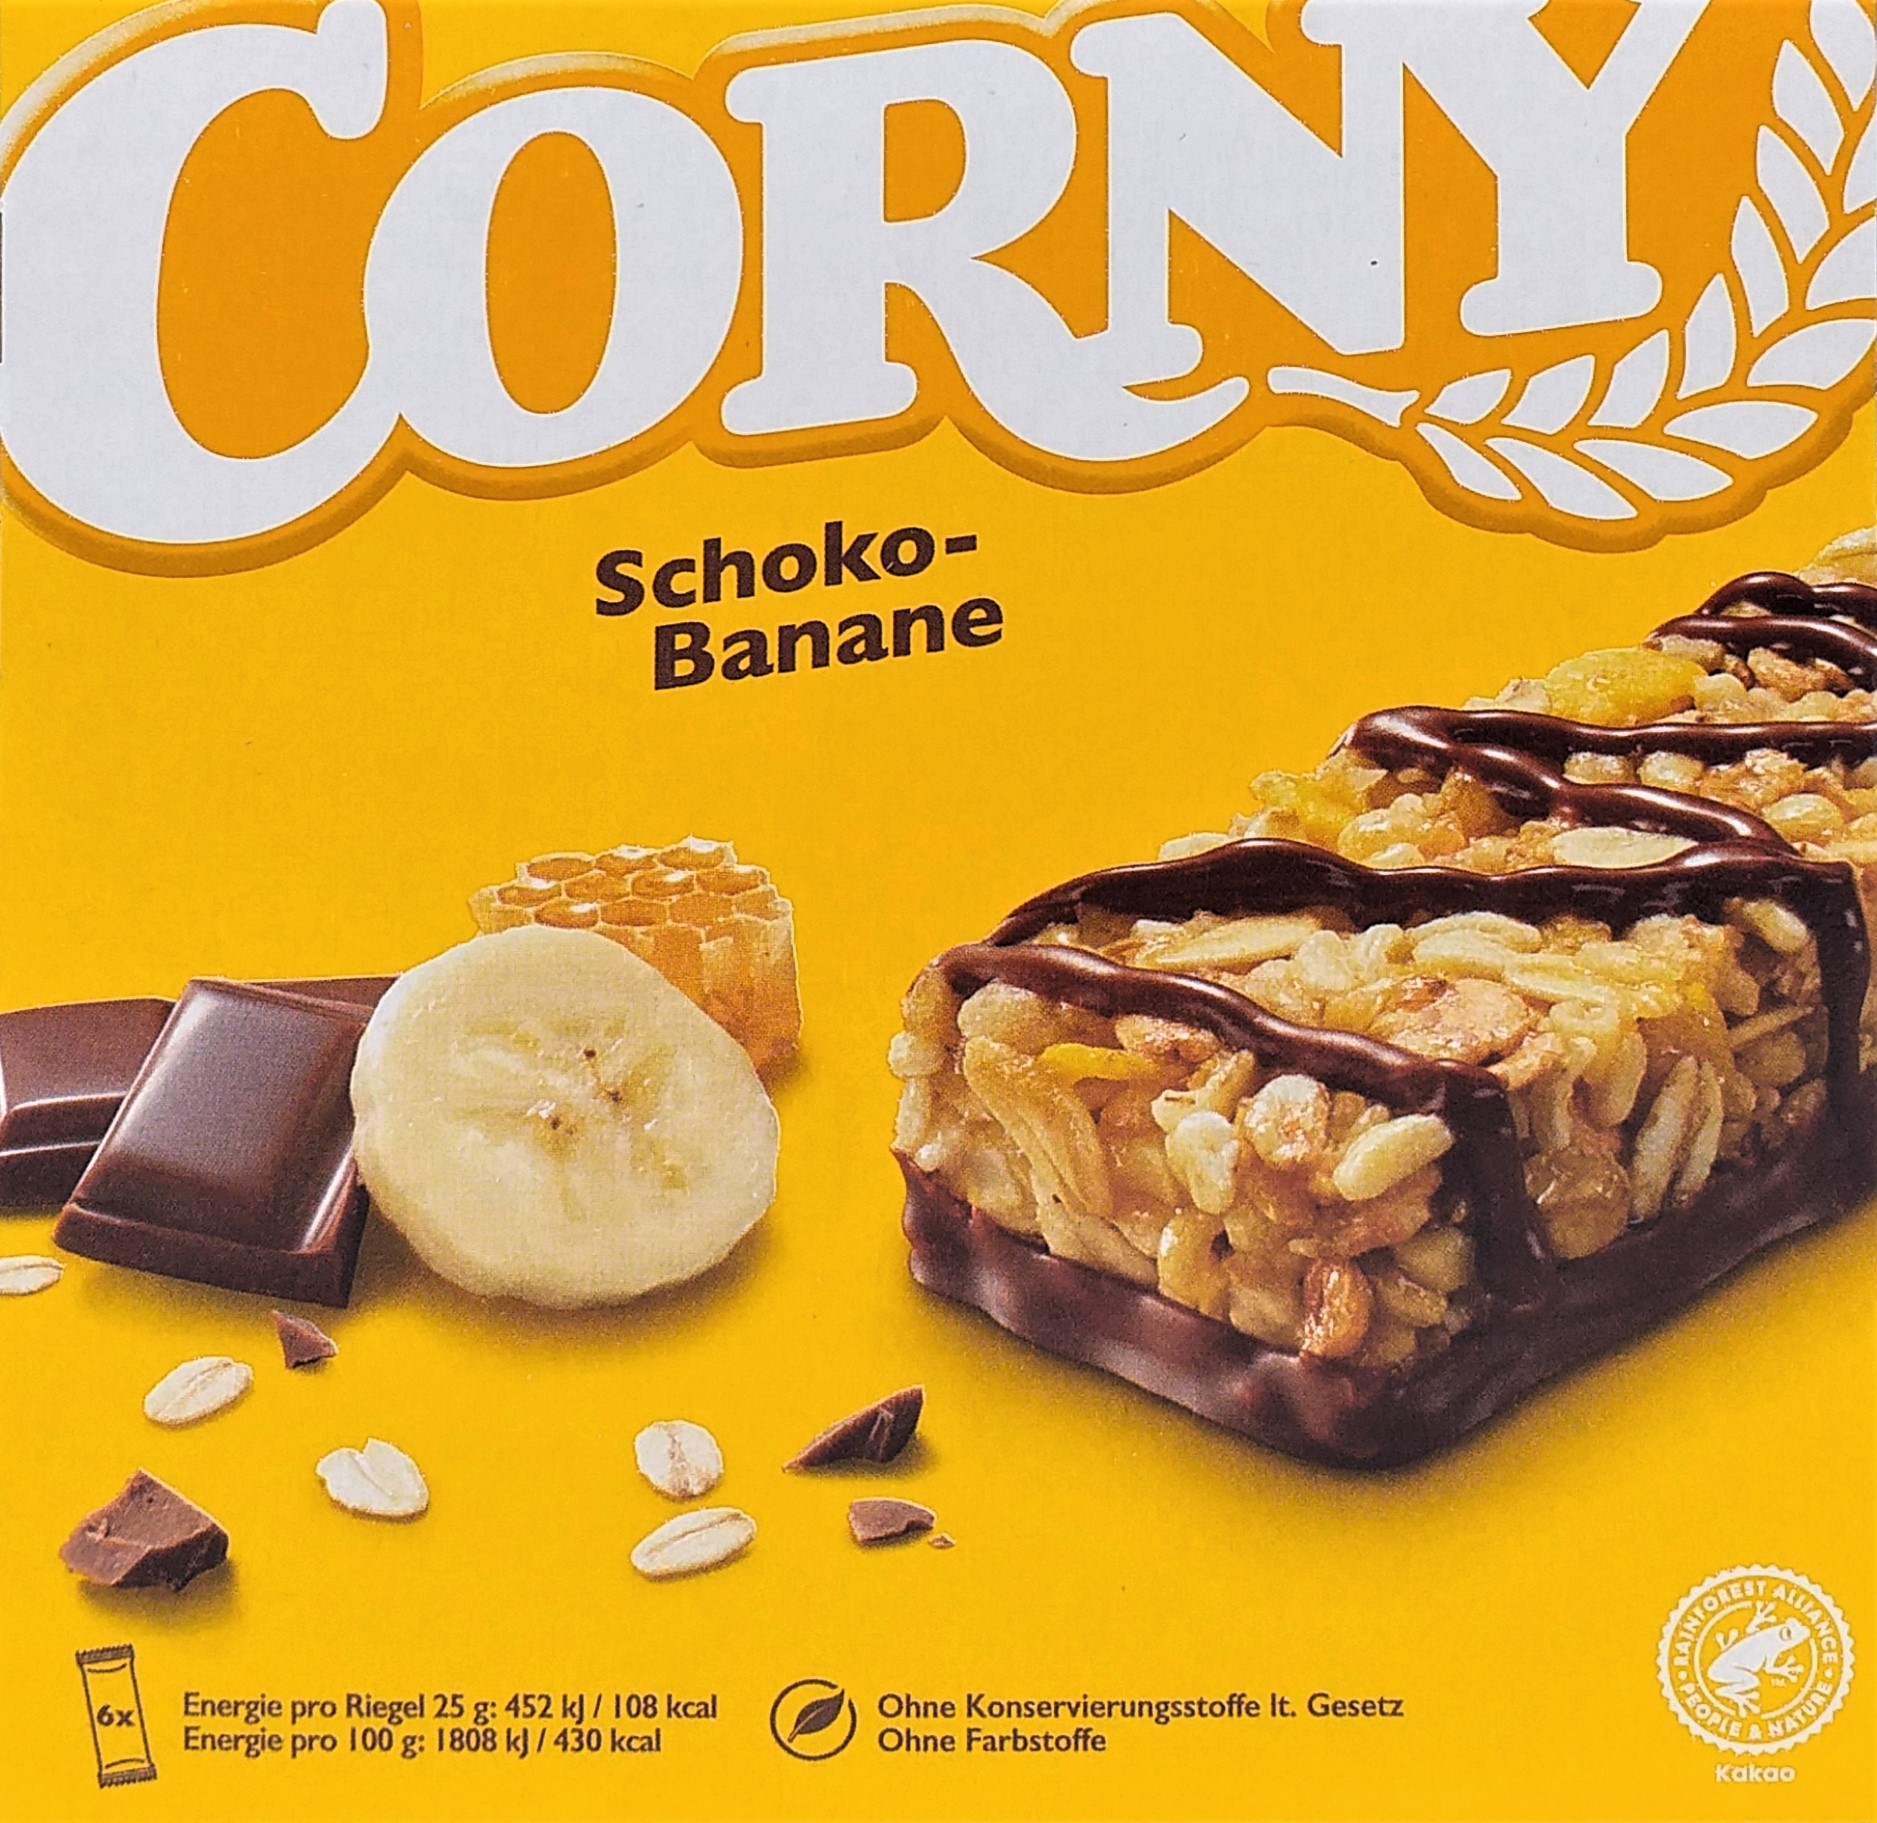 Corny Schoko Banane 6ST 150g